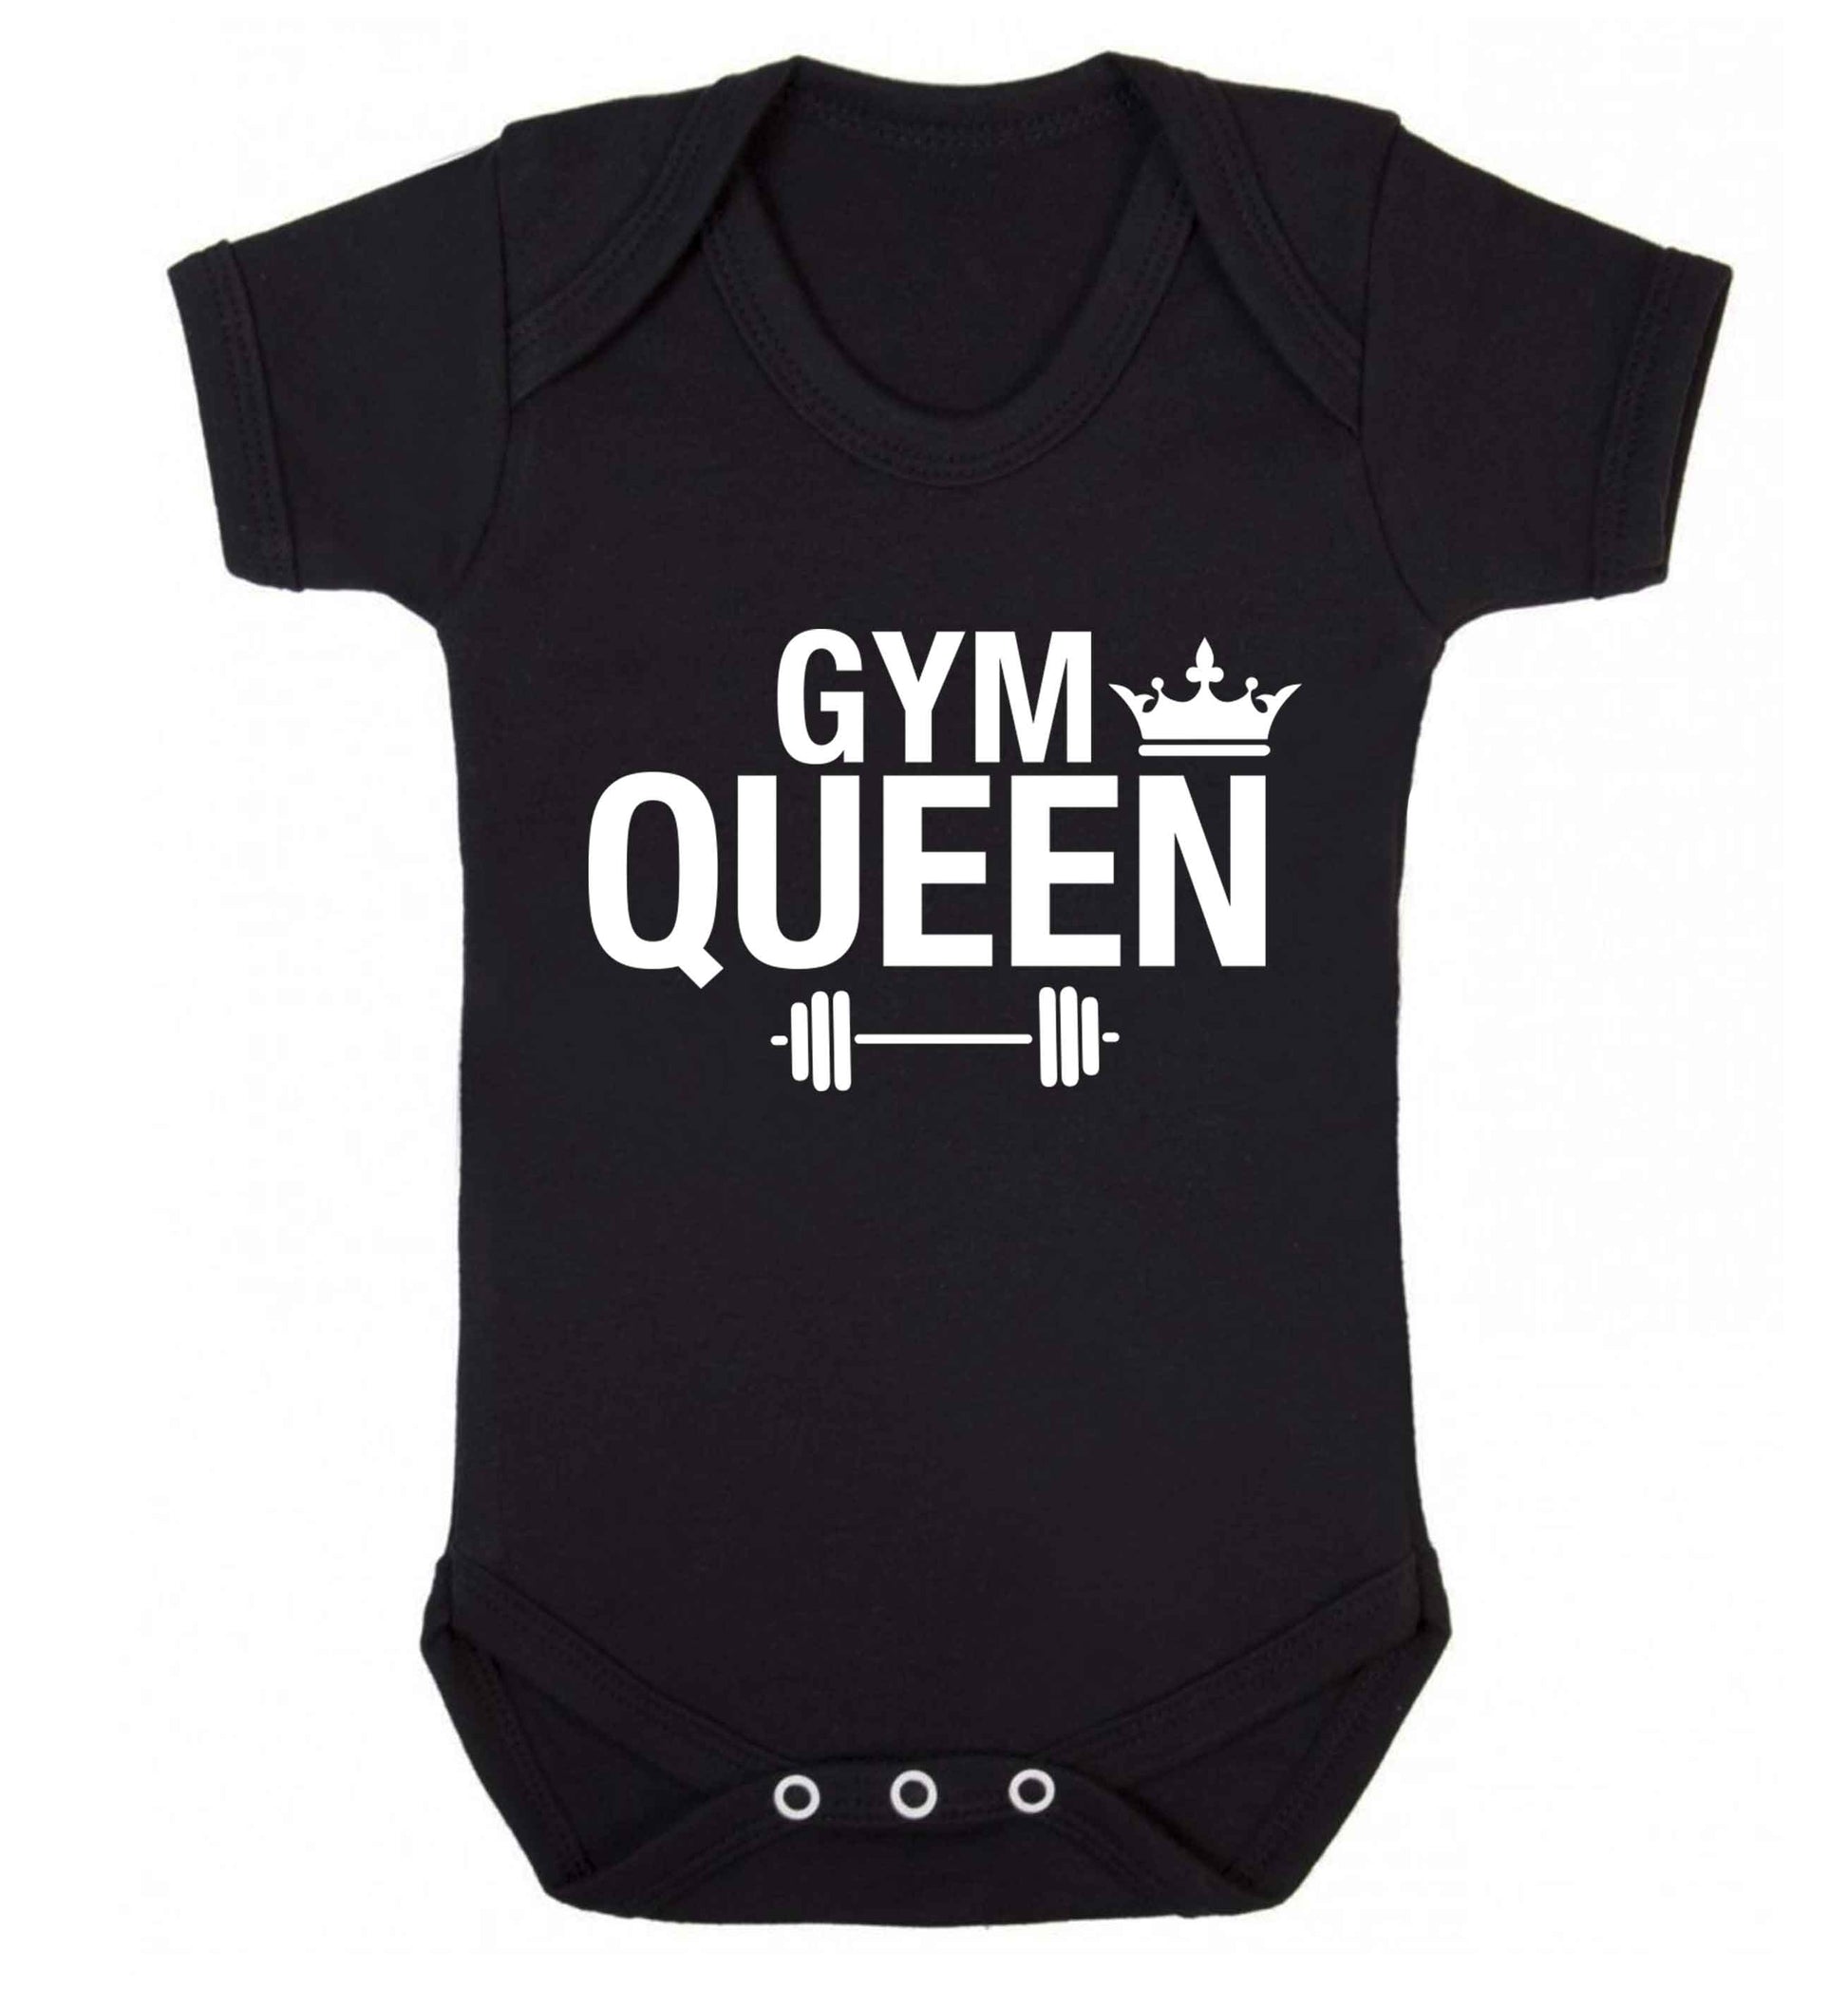 Gym queen Baby Vest black 18-24 months